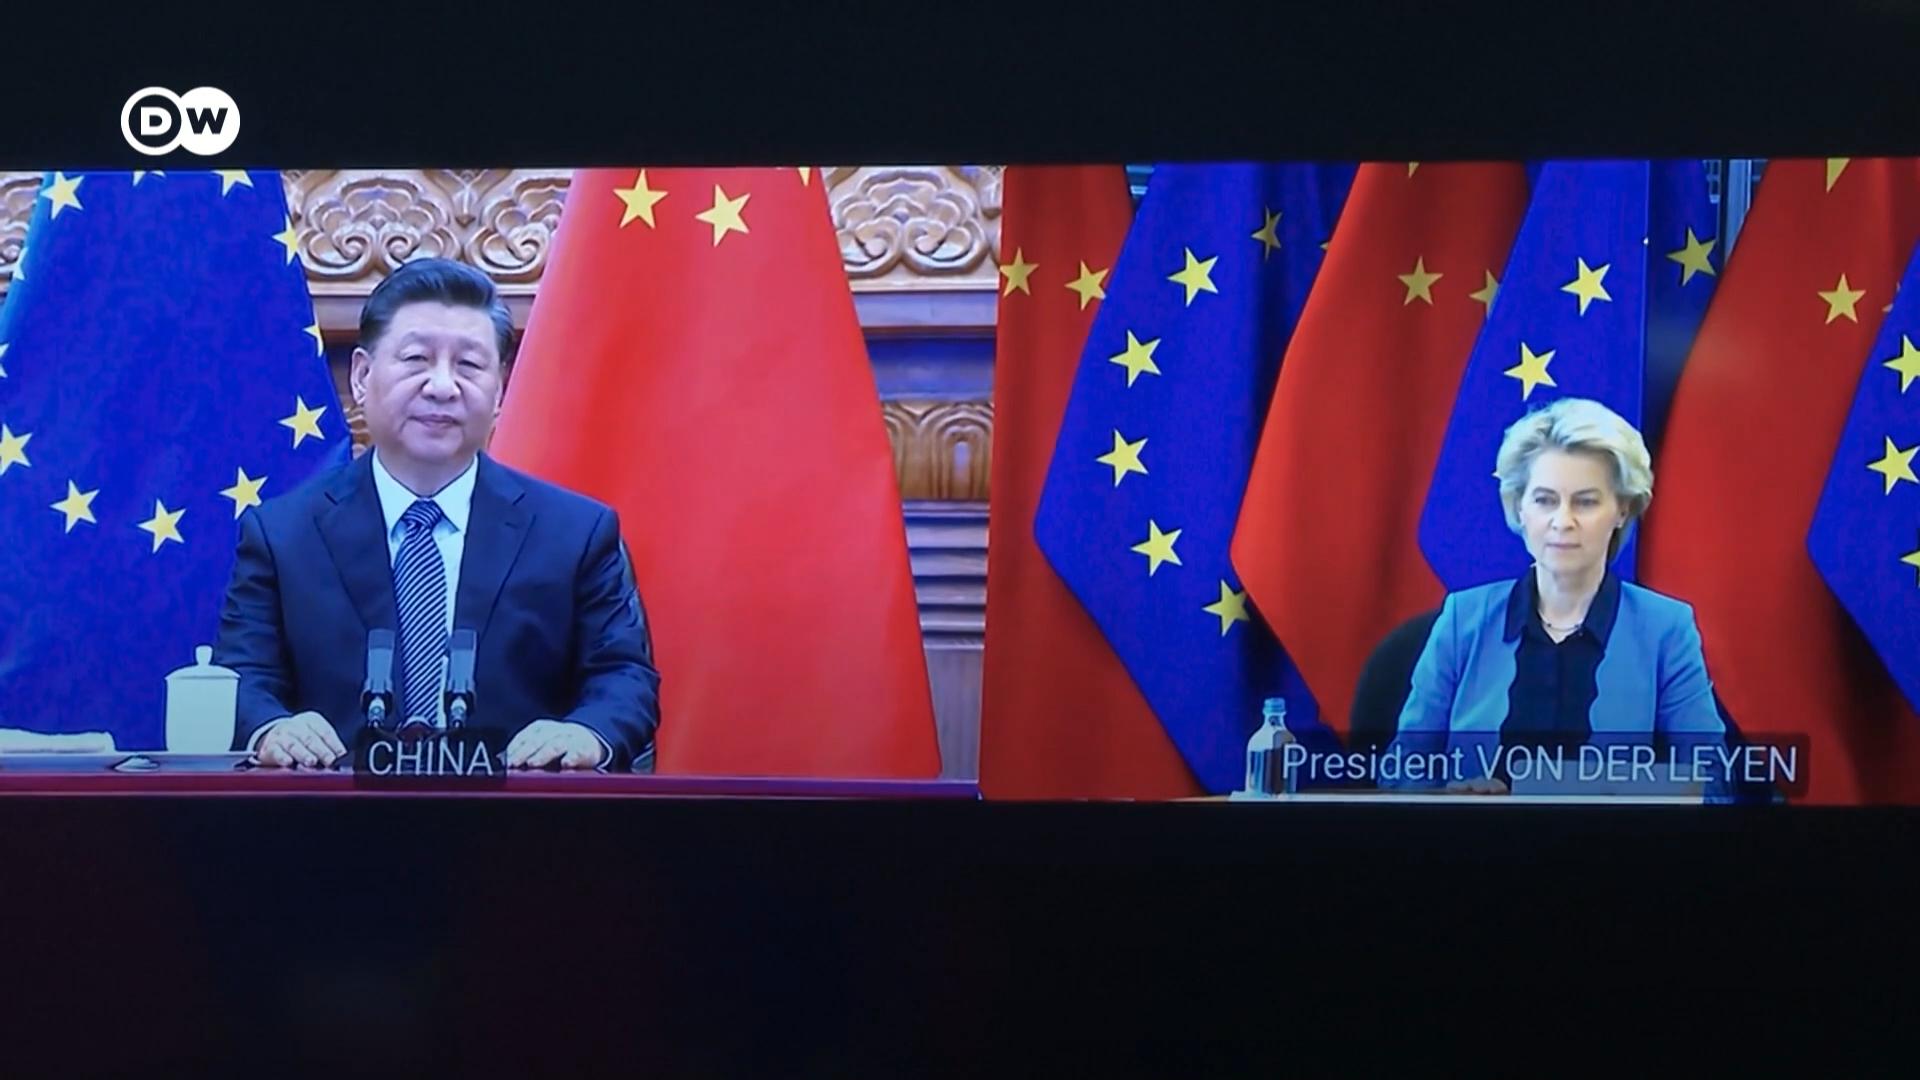 欧盟和中国本周四举行疫情以来的首次面对面峰会。欧盟领导人冯德莱恩和米歇尔前往北京与中国领导人习近平举行会谈。近年来，随着地缘政治紧张加剧，欧中关系变得越来越不平坦。